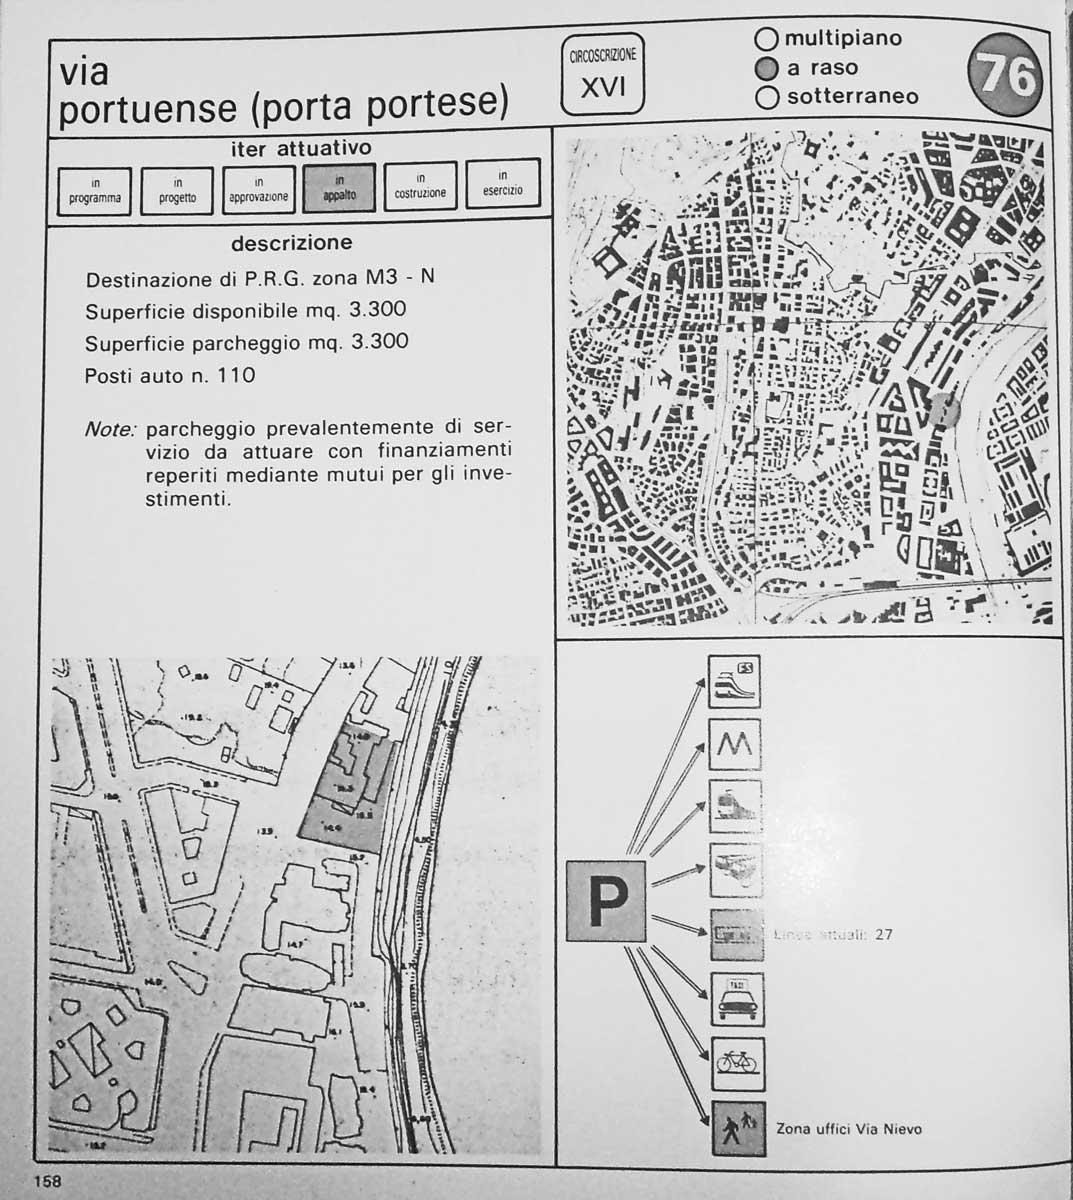 8 - Interventi per i parcheggi e le aree di scambio, collana di documentazione della Ripartizione XIV - Mobilità e traffico del Comune di Roma, 1985 - Tavola interna